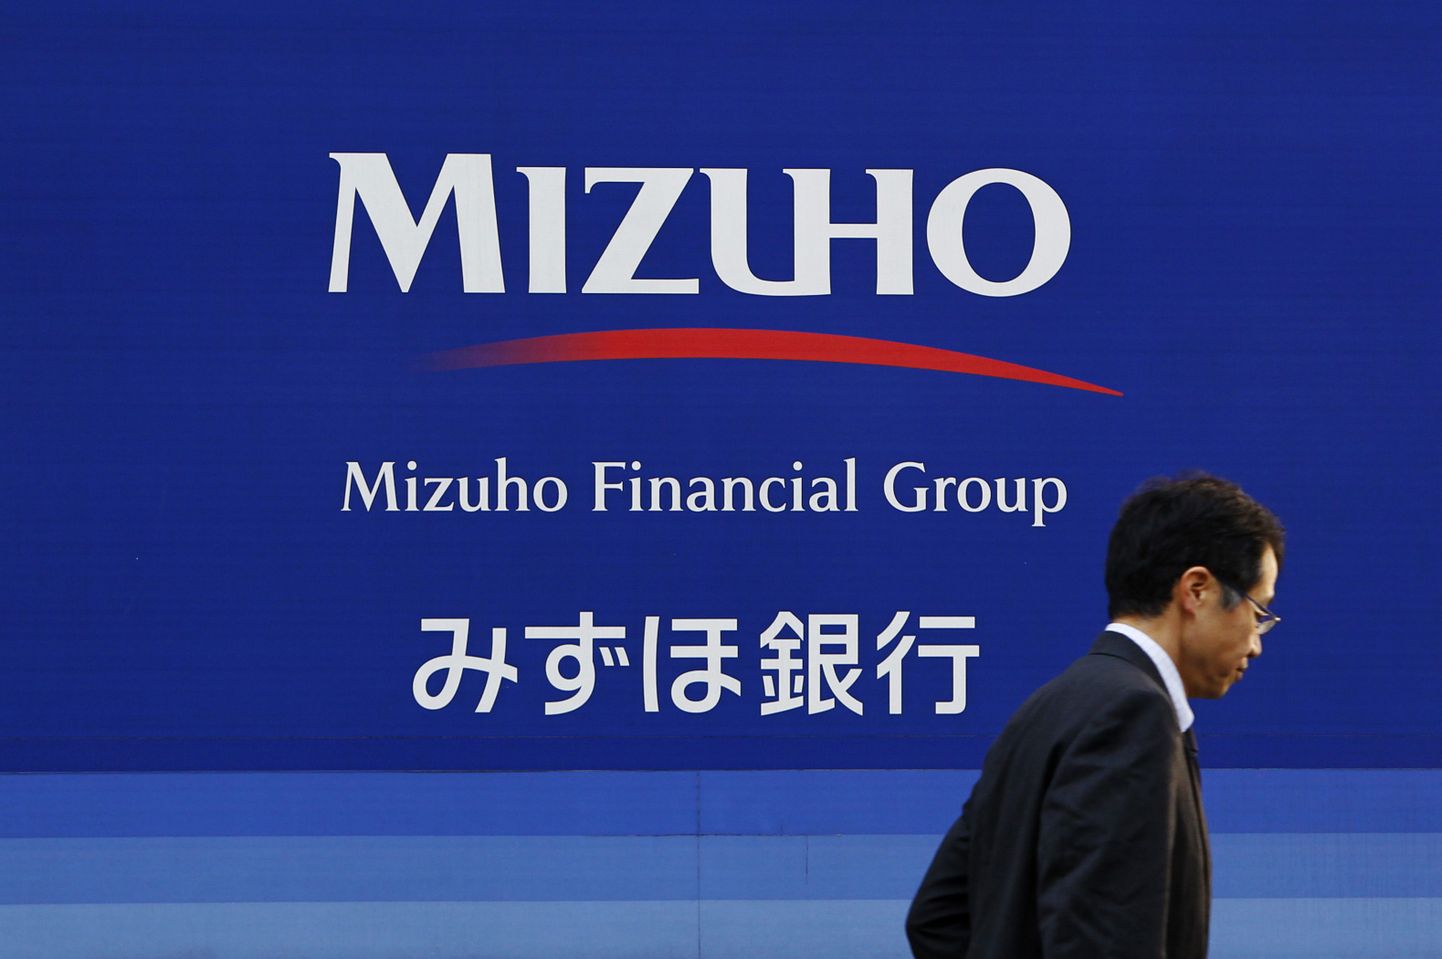 Mizuho Financial Group.